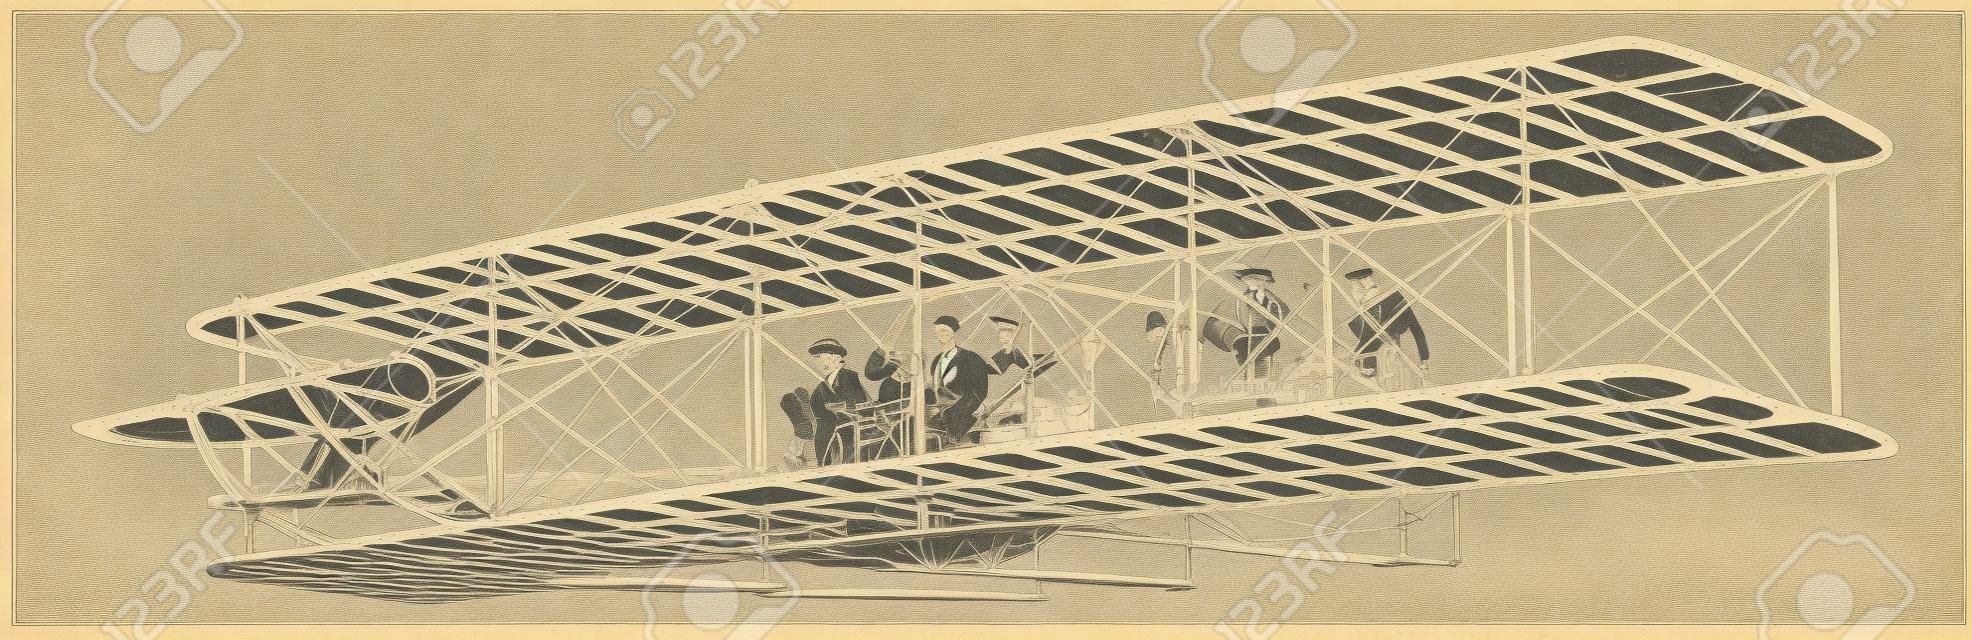 ライトブラザーズ飛行機は1908年に多くの成功した昇天、ヴィンテージ線画や彫刻イラストを作った飛行実験で最も成功しました。